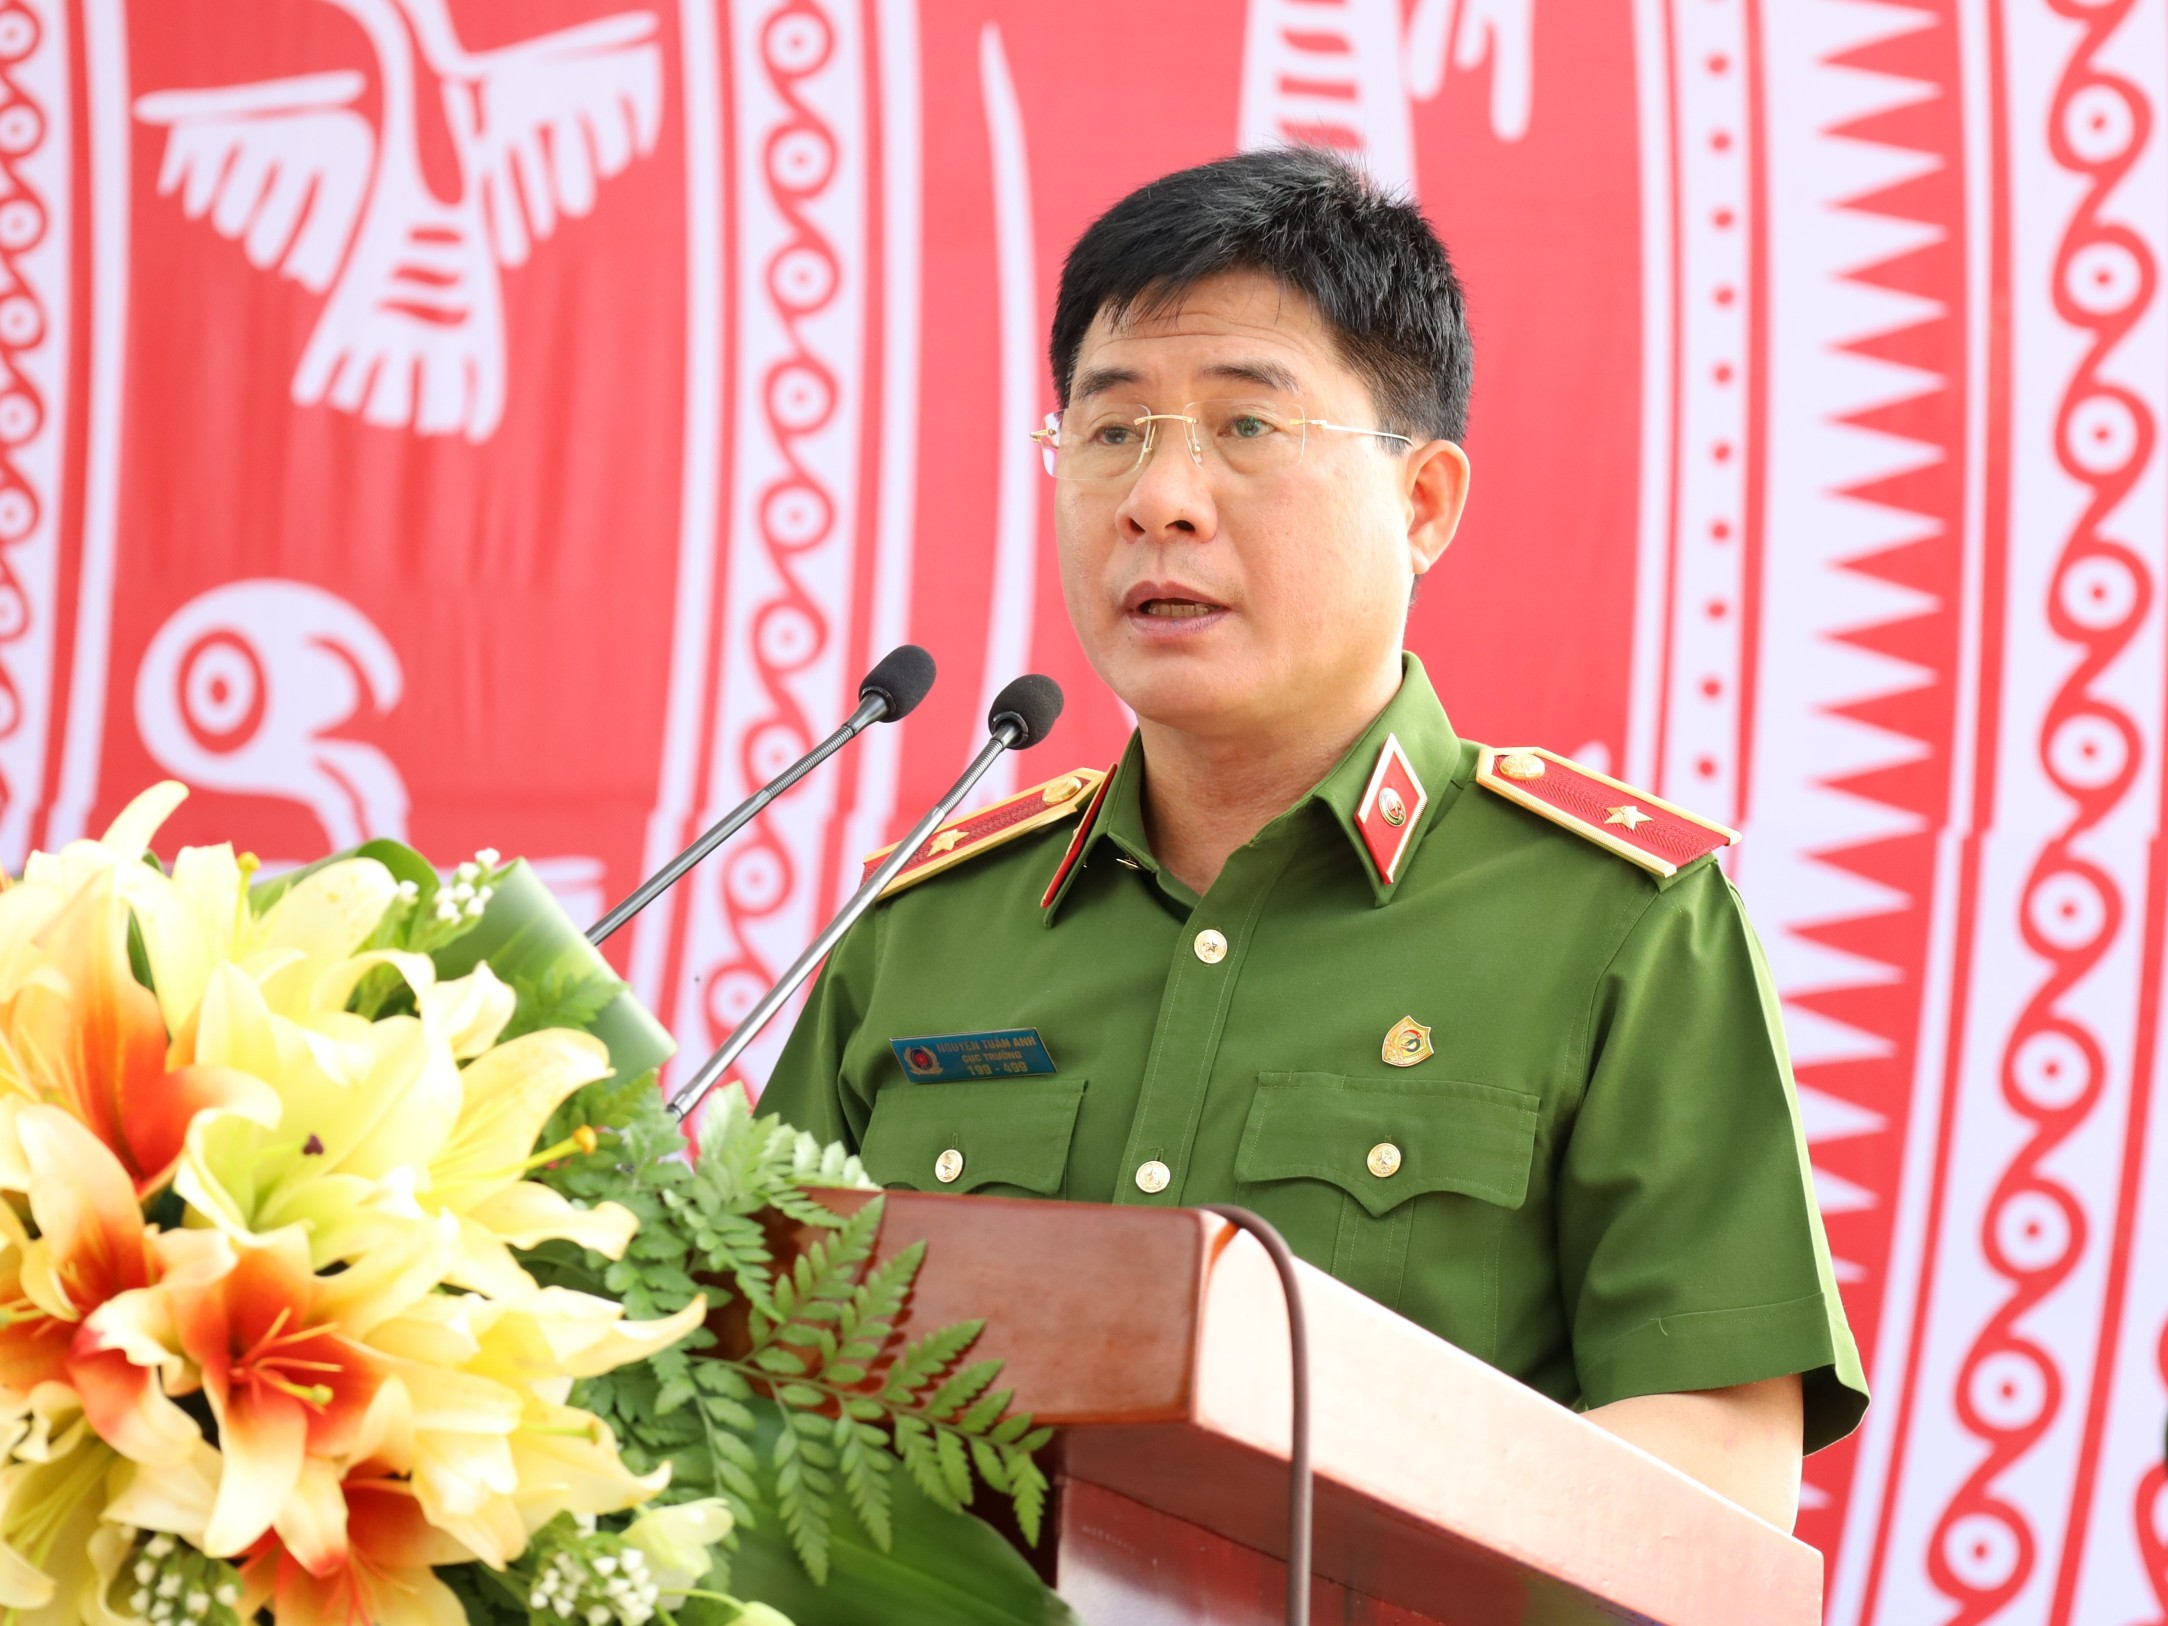 Thiếu tướng Nguyễn Tuấn Anh - Cục trưởng Cục Cảnh sát PCCC & CNCH Bộ Công an phát biểu tại hội thi.